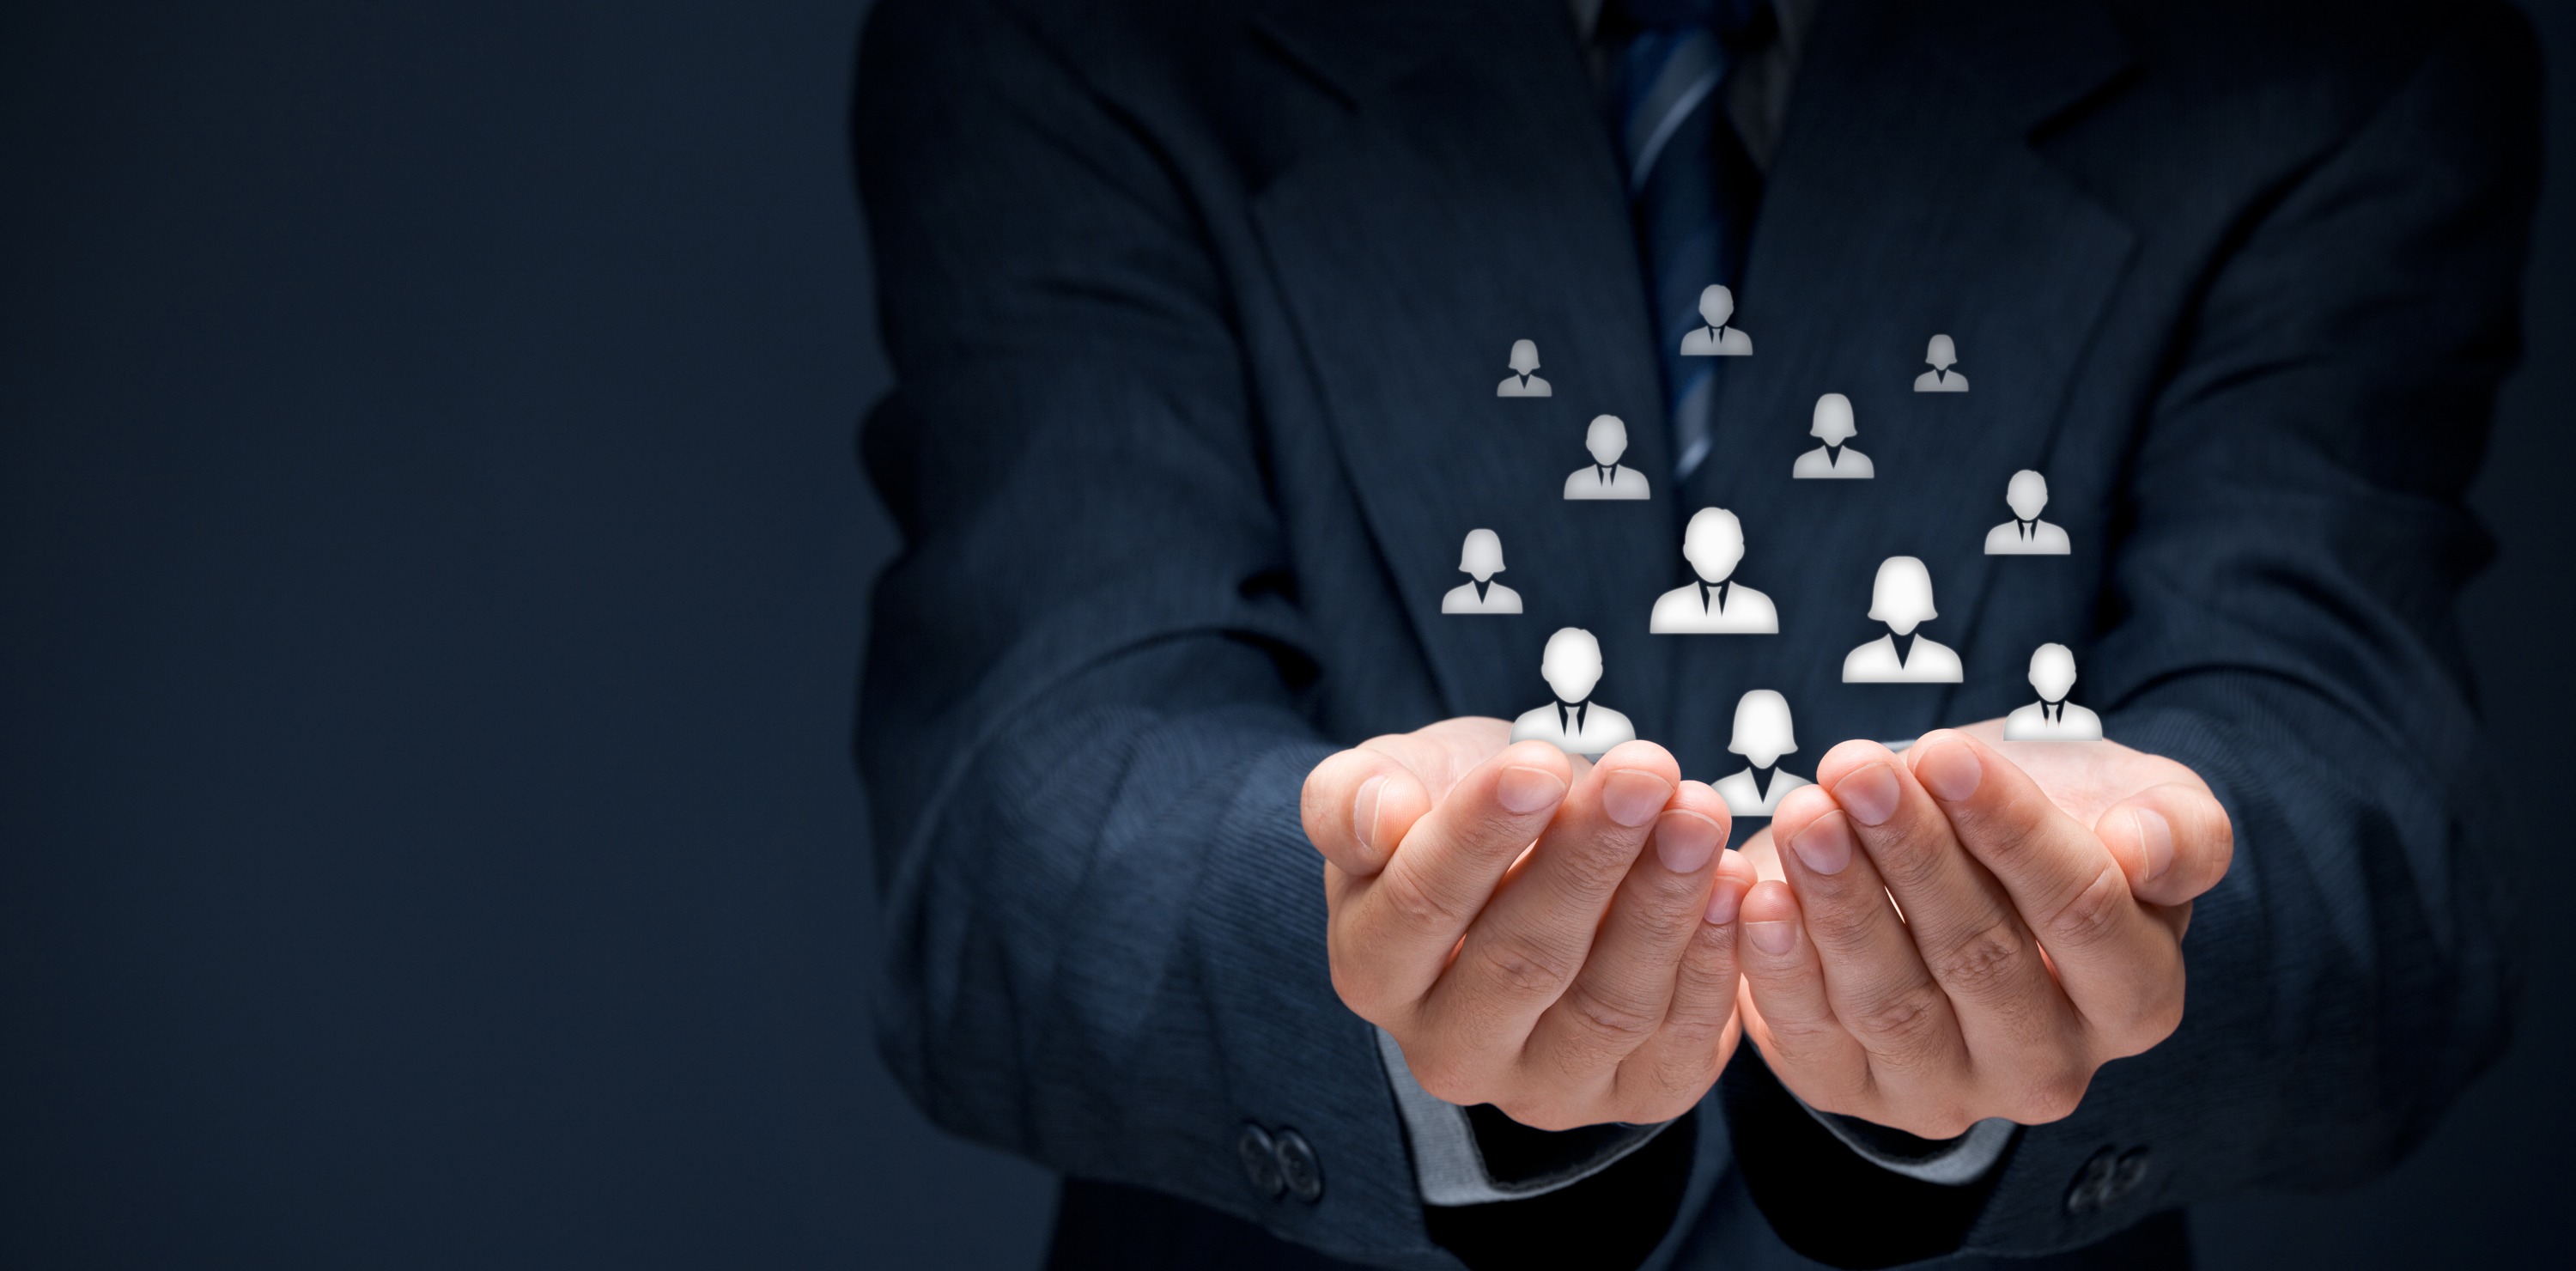 Nuevo management: la premisa «los empleados primero» marca las tendencias globales en gestión de personal